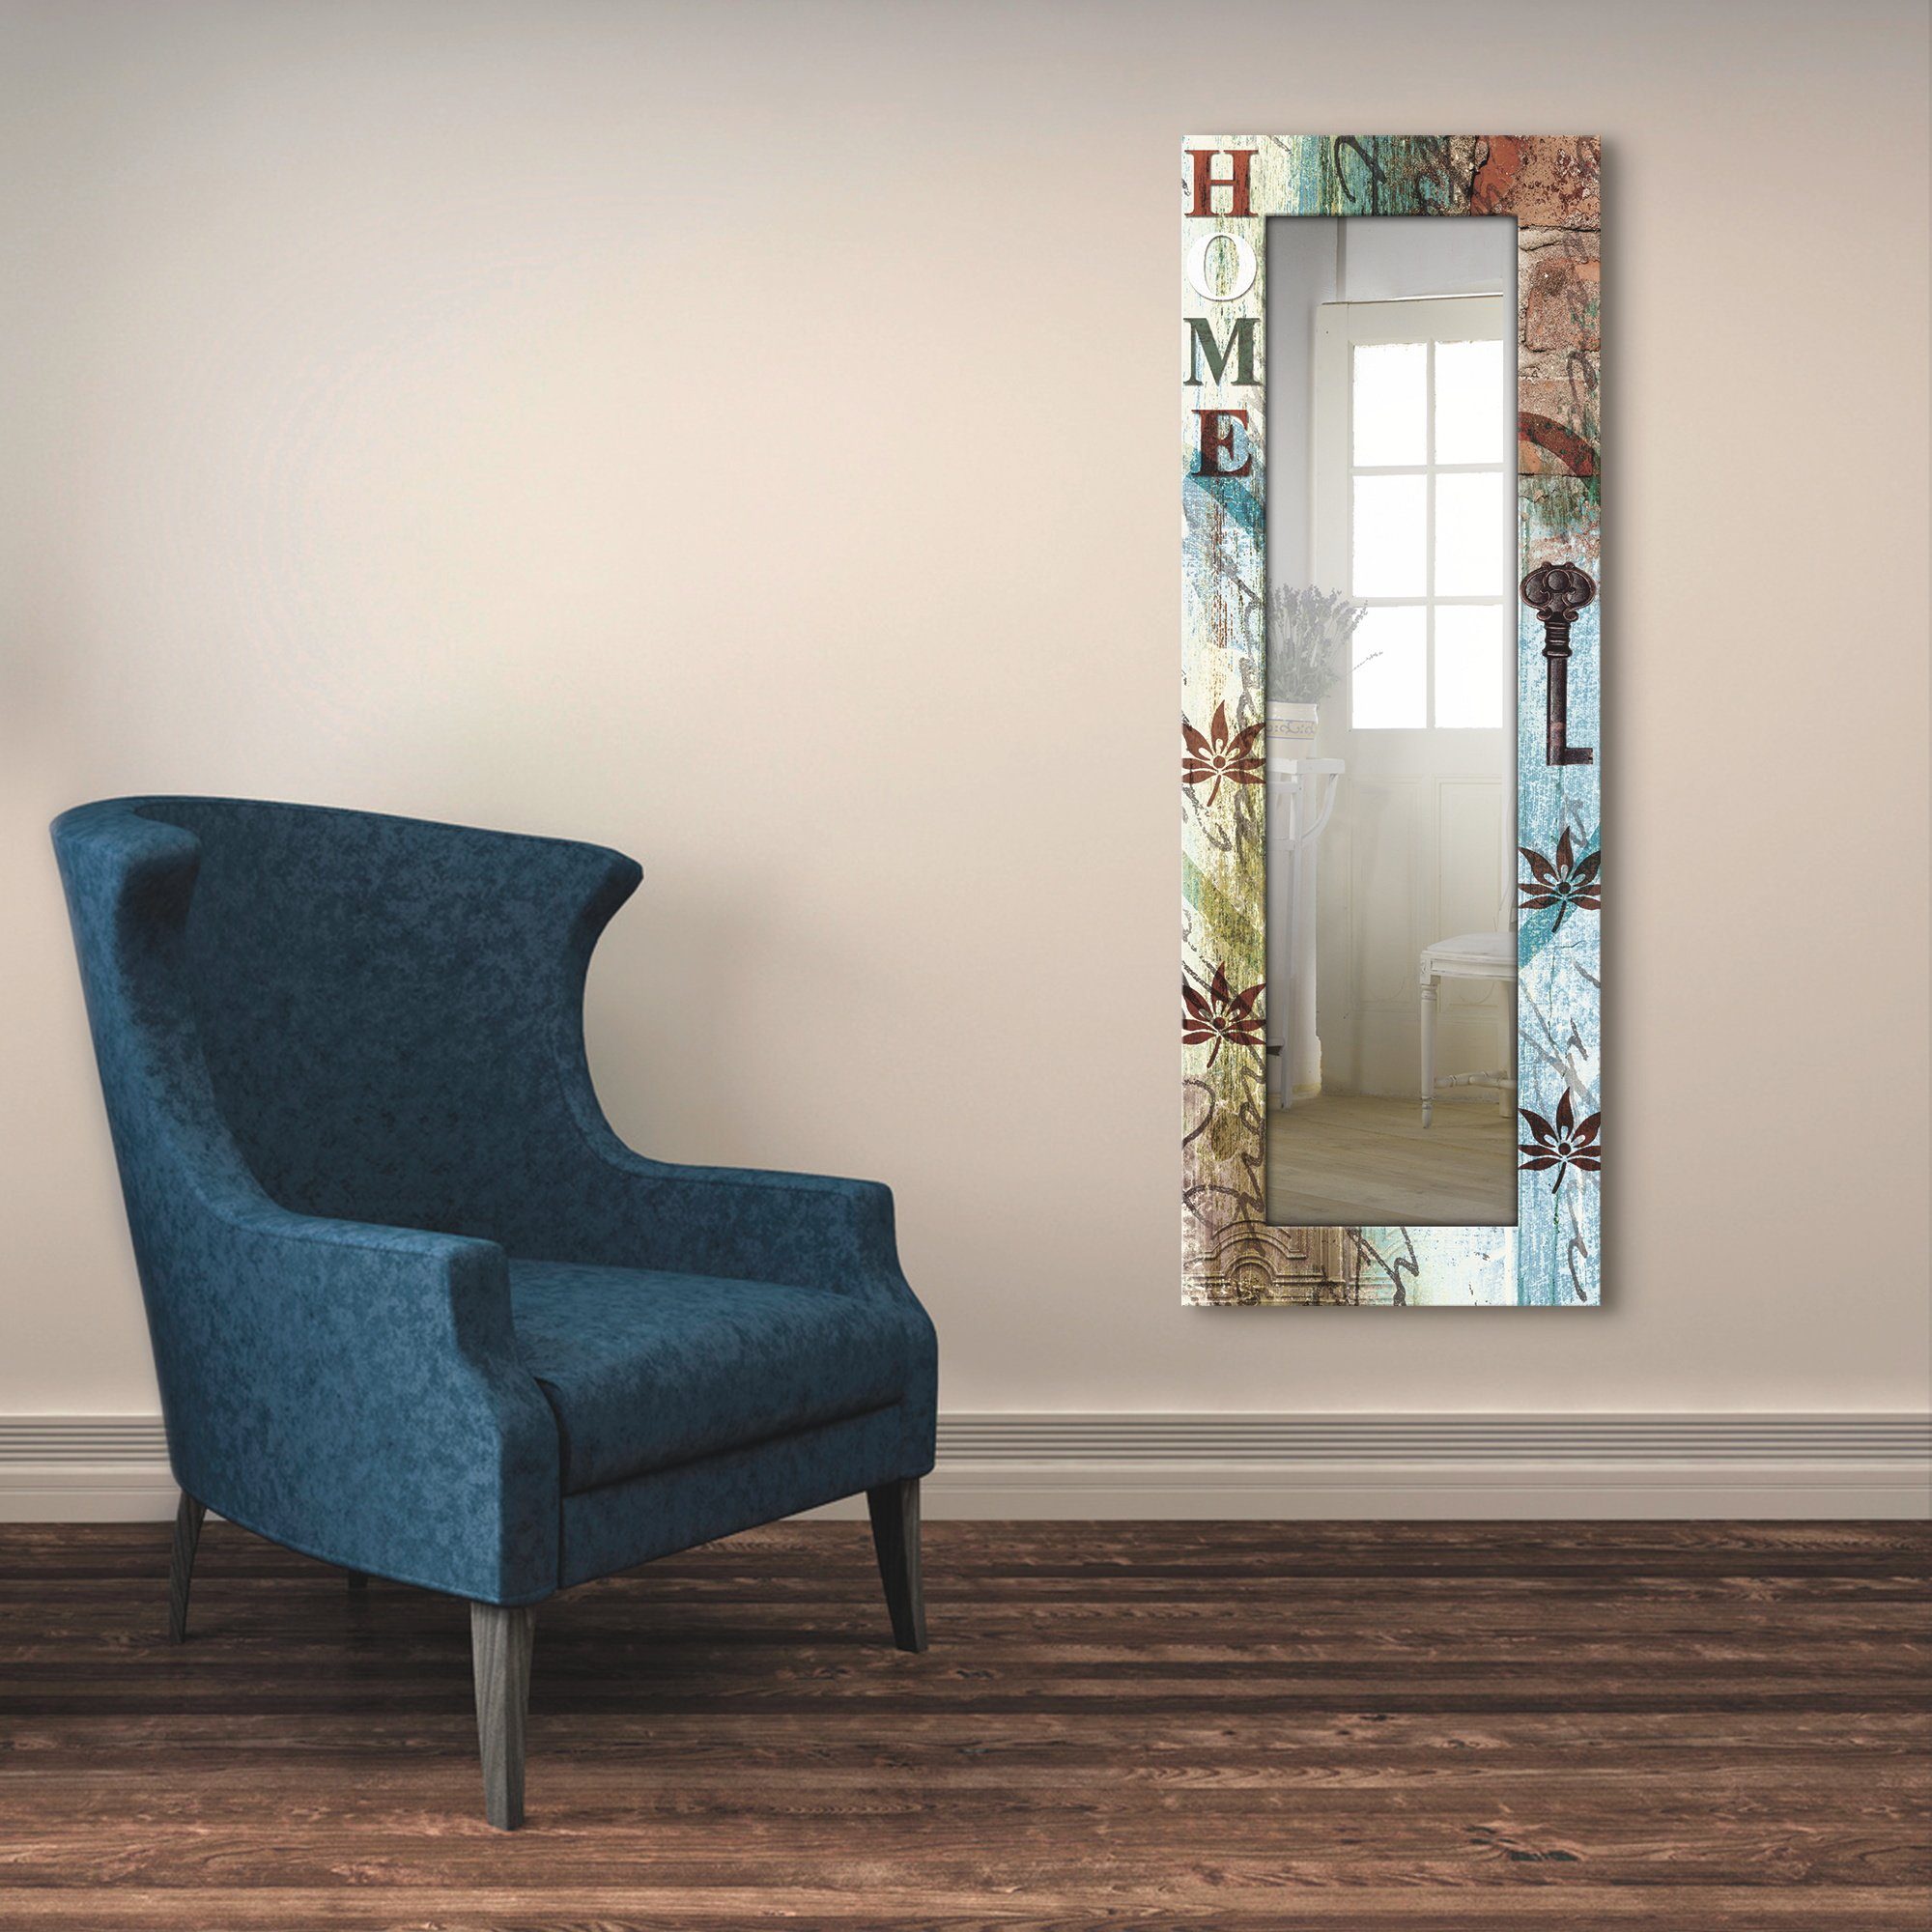 Wandspiegel, Ganzkörperspiegel, Motivrahmen, mit in Landhaus Artland Hause gerahmter Dekospiegel taktvollen Farben, Buntes zu